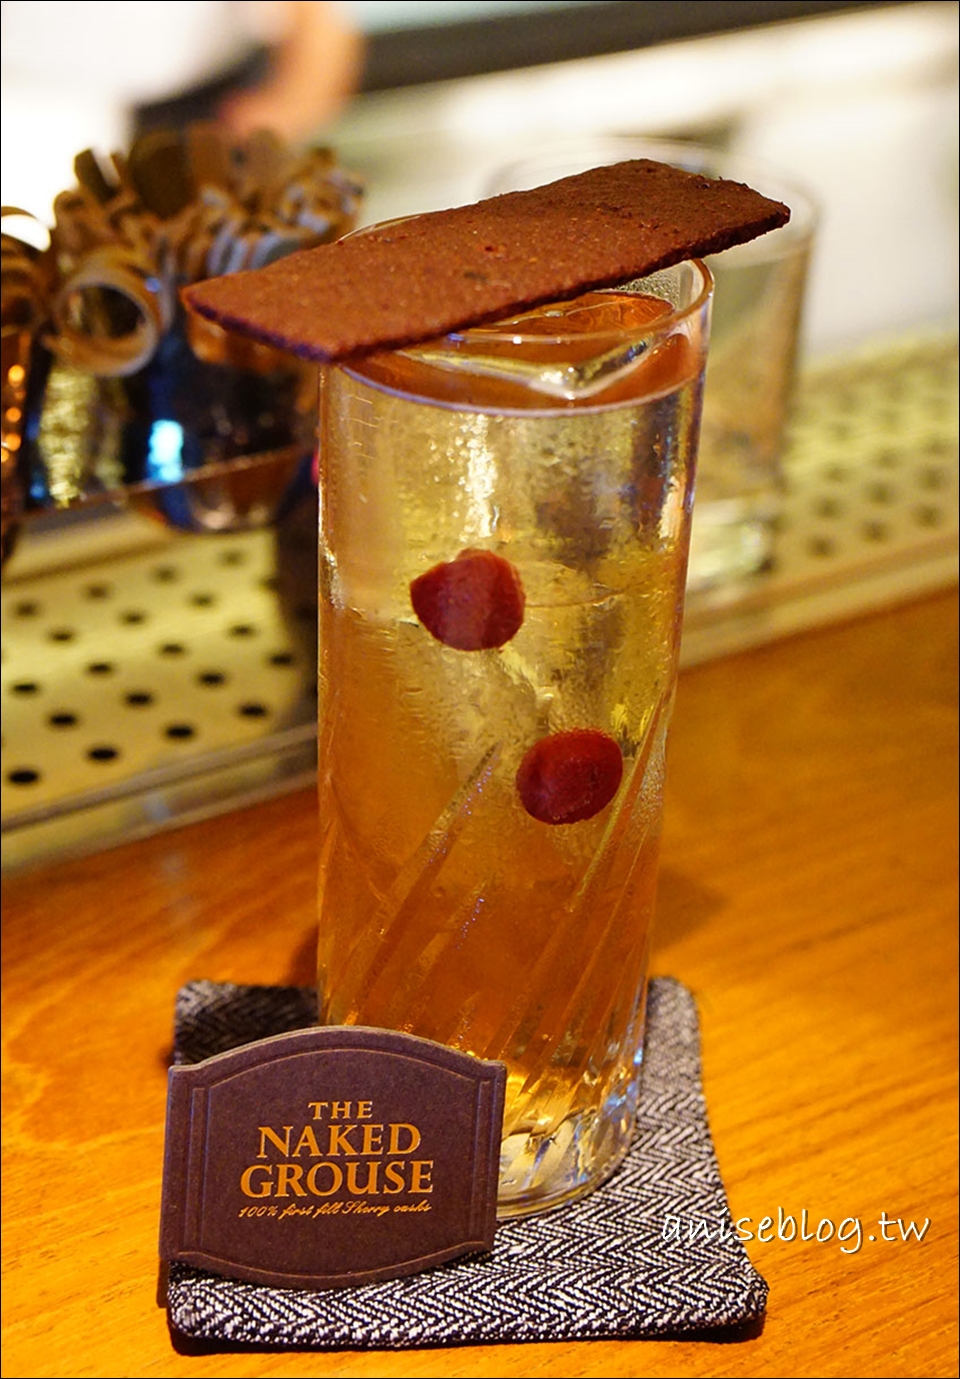 裸雀初次雪莉桶蘇格蘭威士忌(THE NAKED GROUSE)，來自蘇格蘭的珍貴好酒